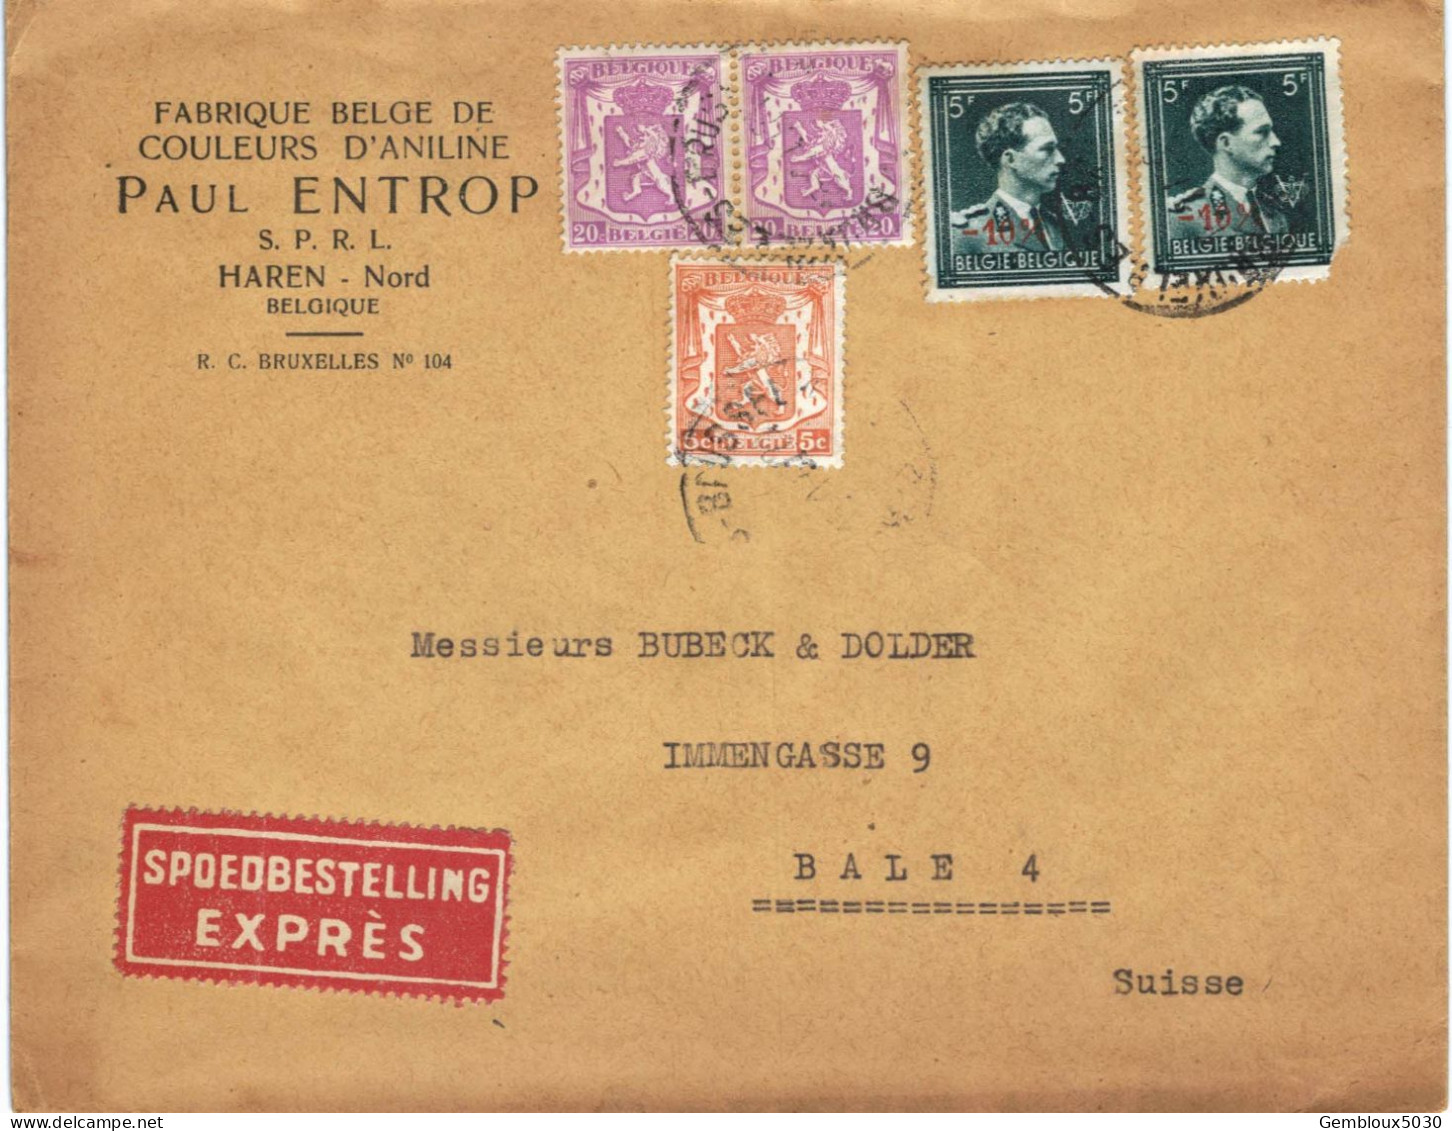 (01) Belgique 1 X N° 419 + 2 X 422 + 2 X 696  Sur Enveloppe écrite De Bruxelles Vers Bâle Suisse En Express - 1935-1949 Piccolo Sigillo Dello Stato